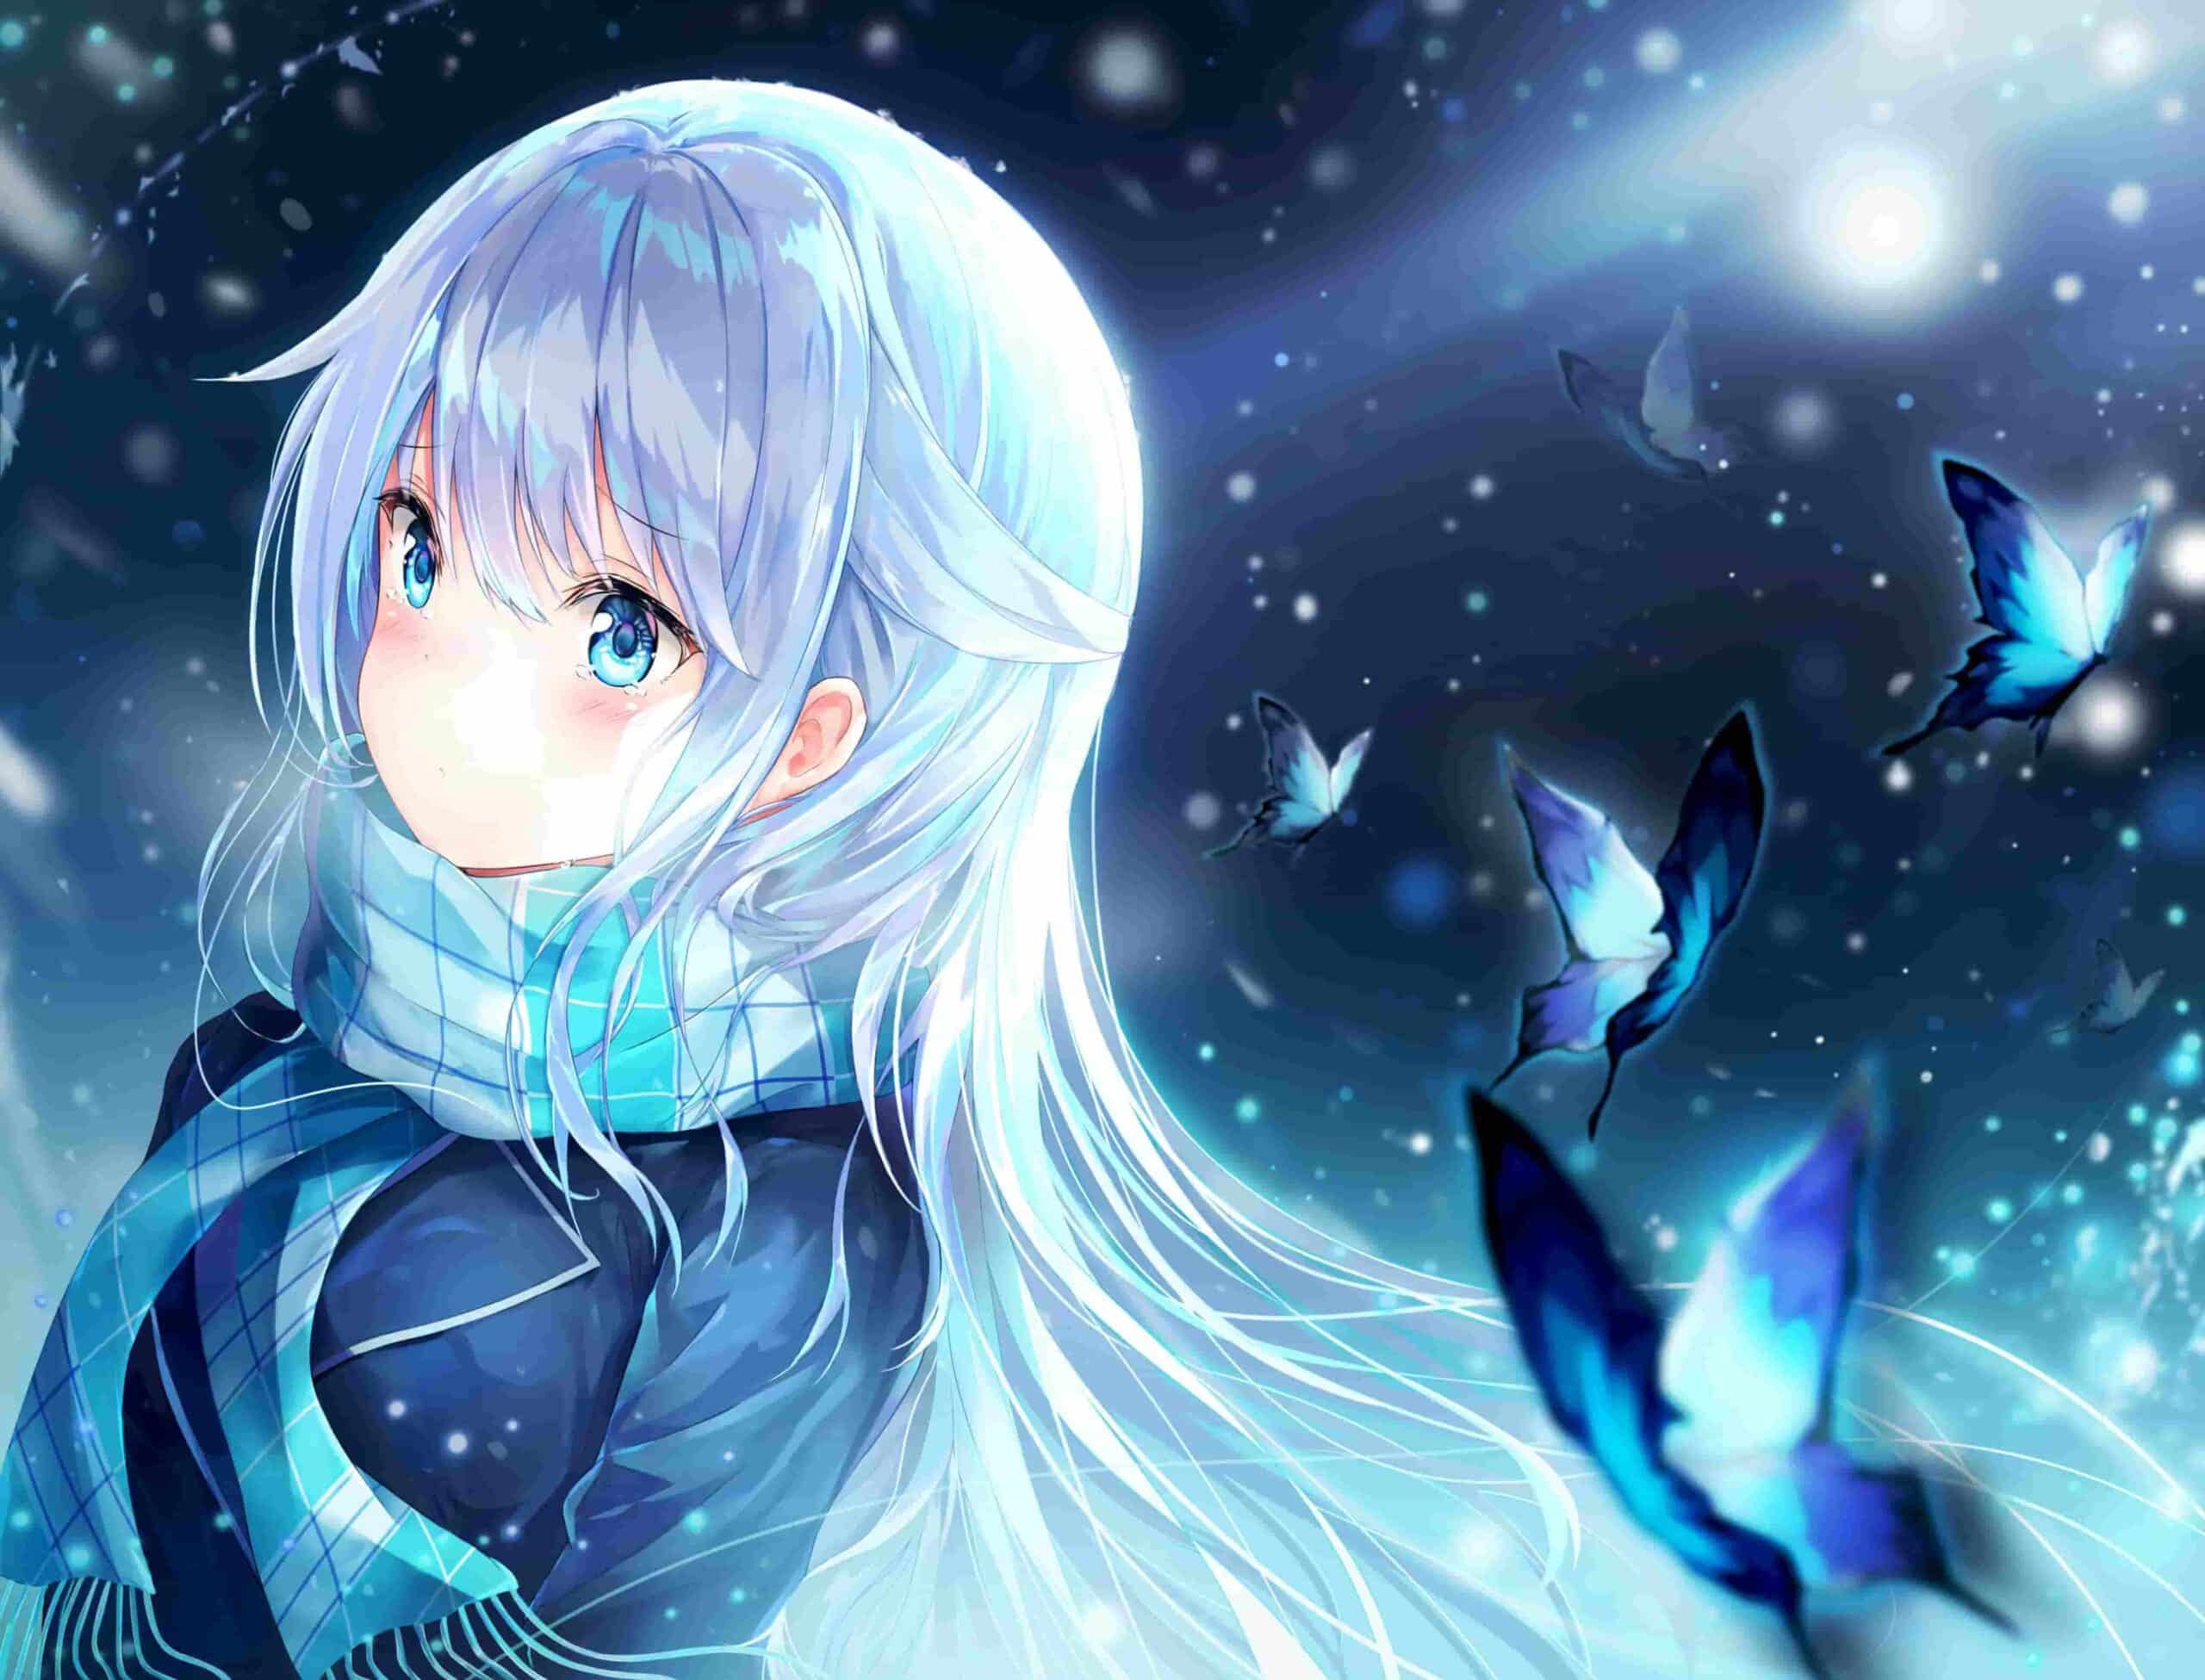 Hình Anime Nữ Tóc Trắng bươm bướm xanh lơ xinh đẹp